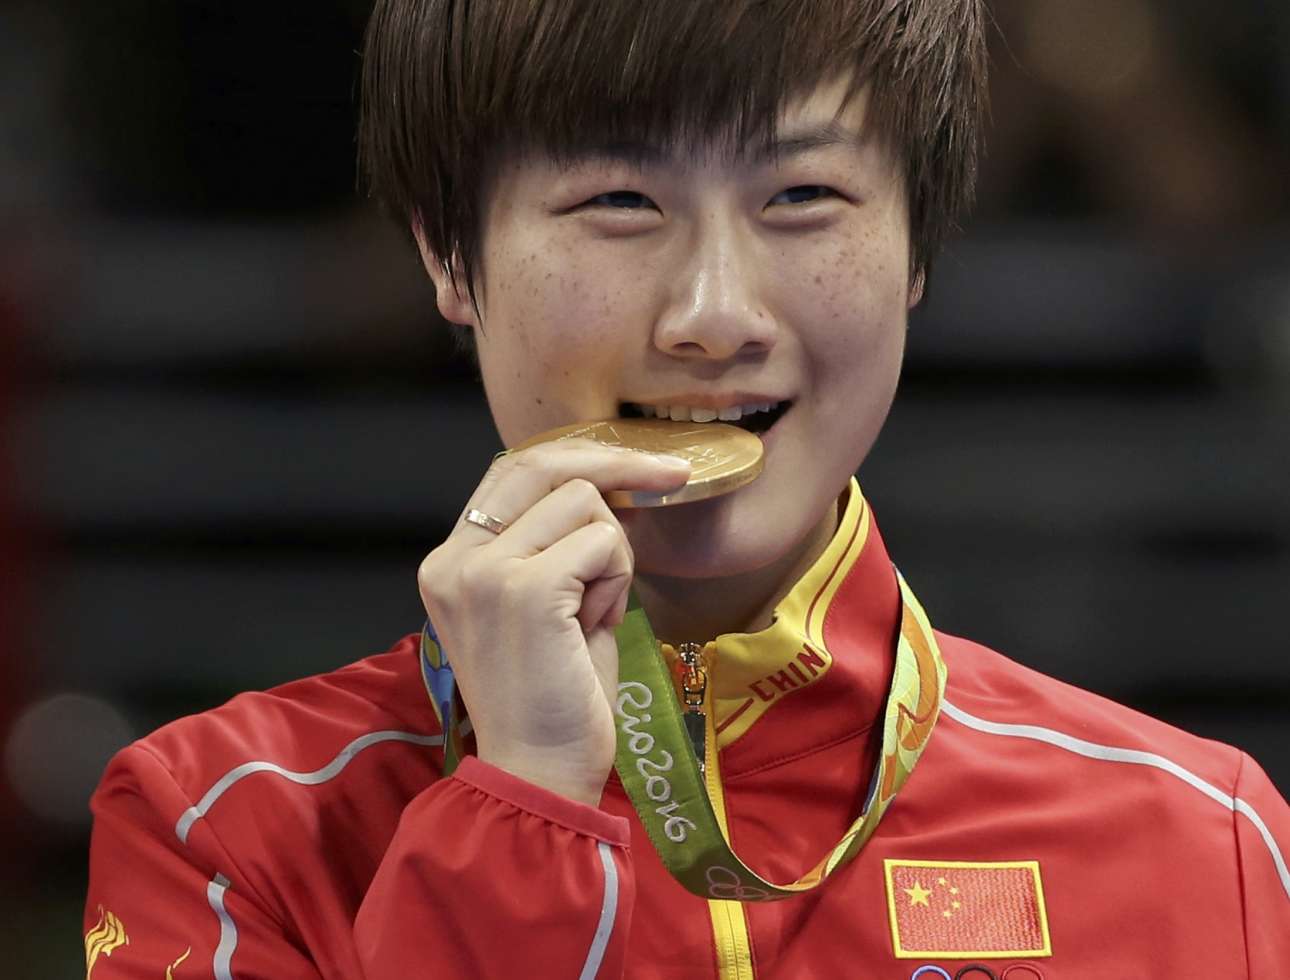 Η επίσης Κινέζα Ντιγκ Νιγκ δαγκώνει το χρυσό της μετάλλιο έχοντας νικήσει την κινέζα αντίπαλο της, Λι Ξιαόξια, στο πινγκ πονγκ